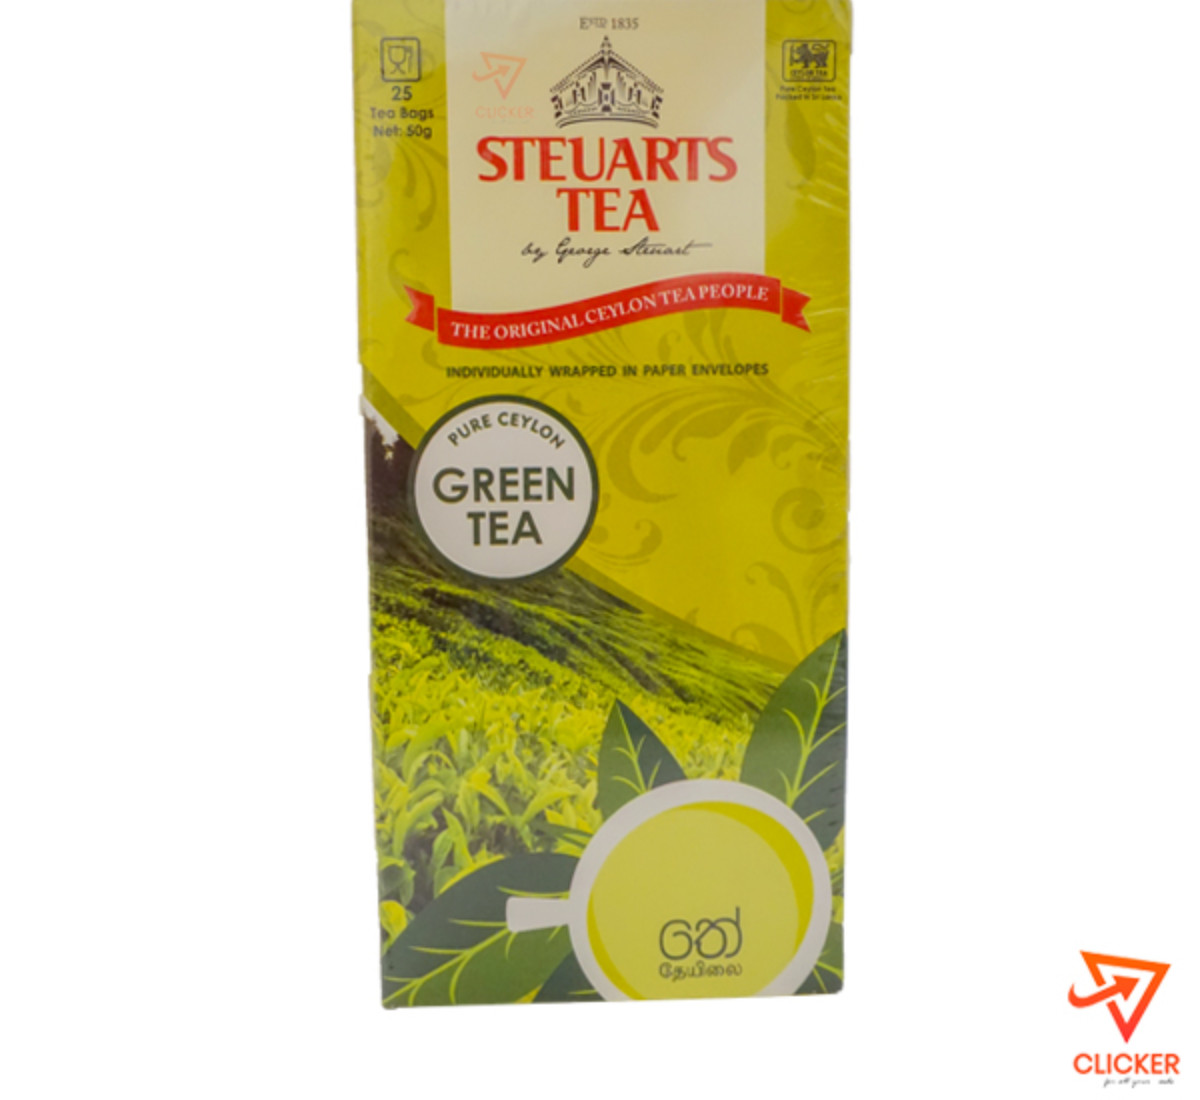 Clicker product 50g GEORGE STEURARTS tea green tea (25tea bags) 936